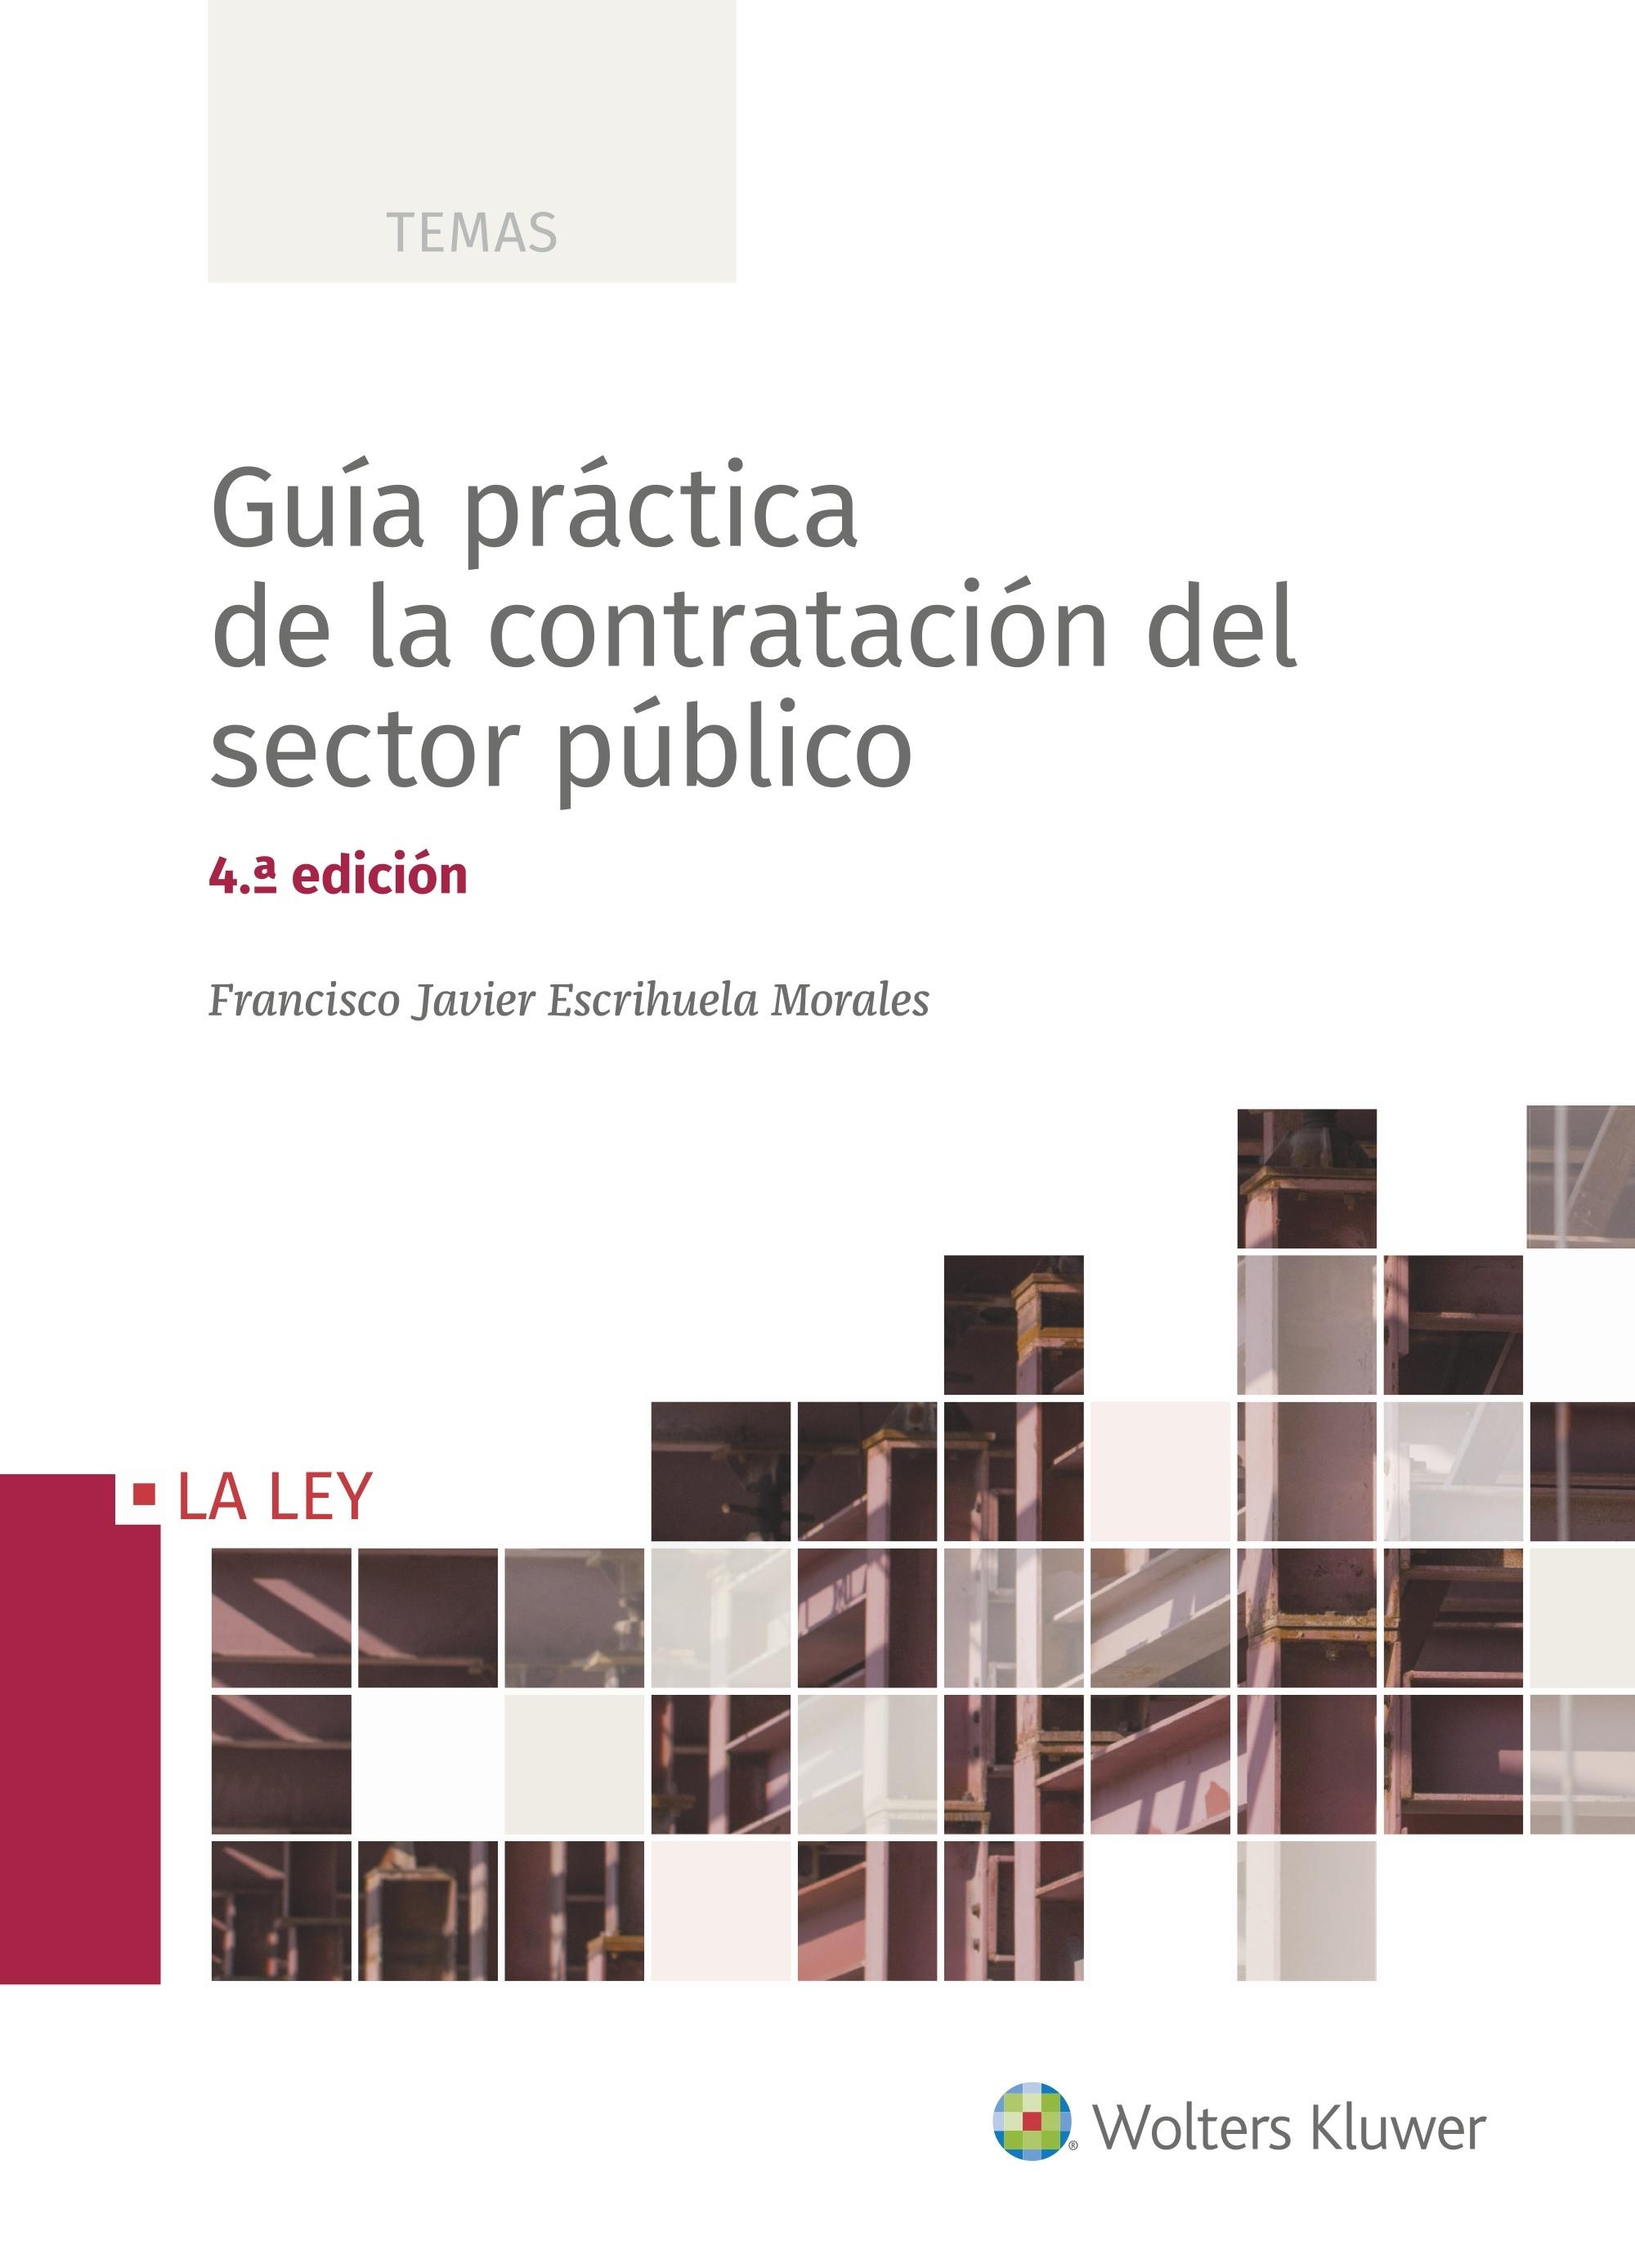 GUIA PRACTICA DE LA CONTRAATACION DEL SECTOR PUBLICO. 4ª EDICION